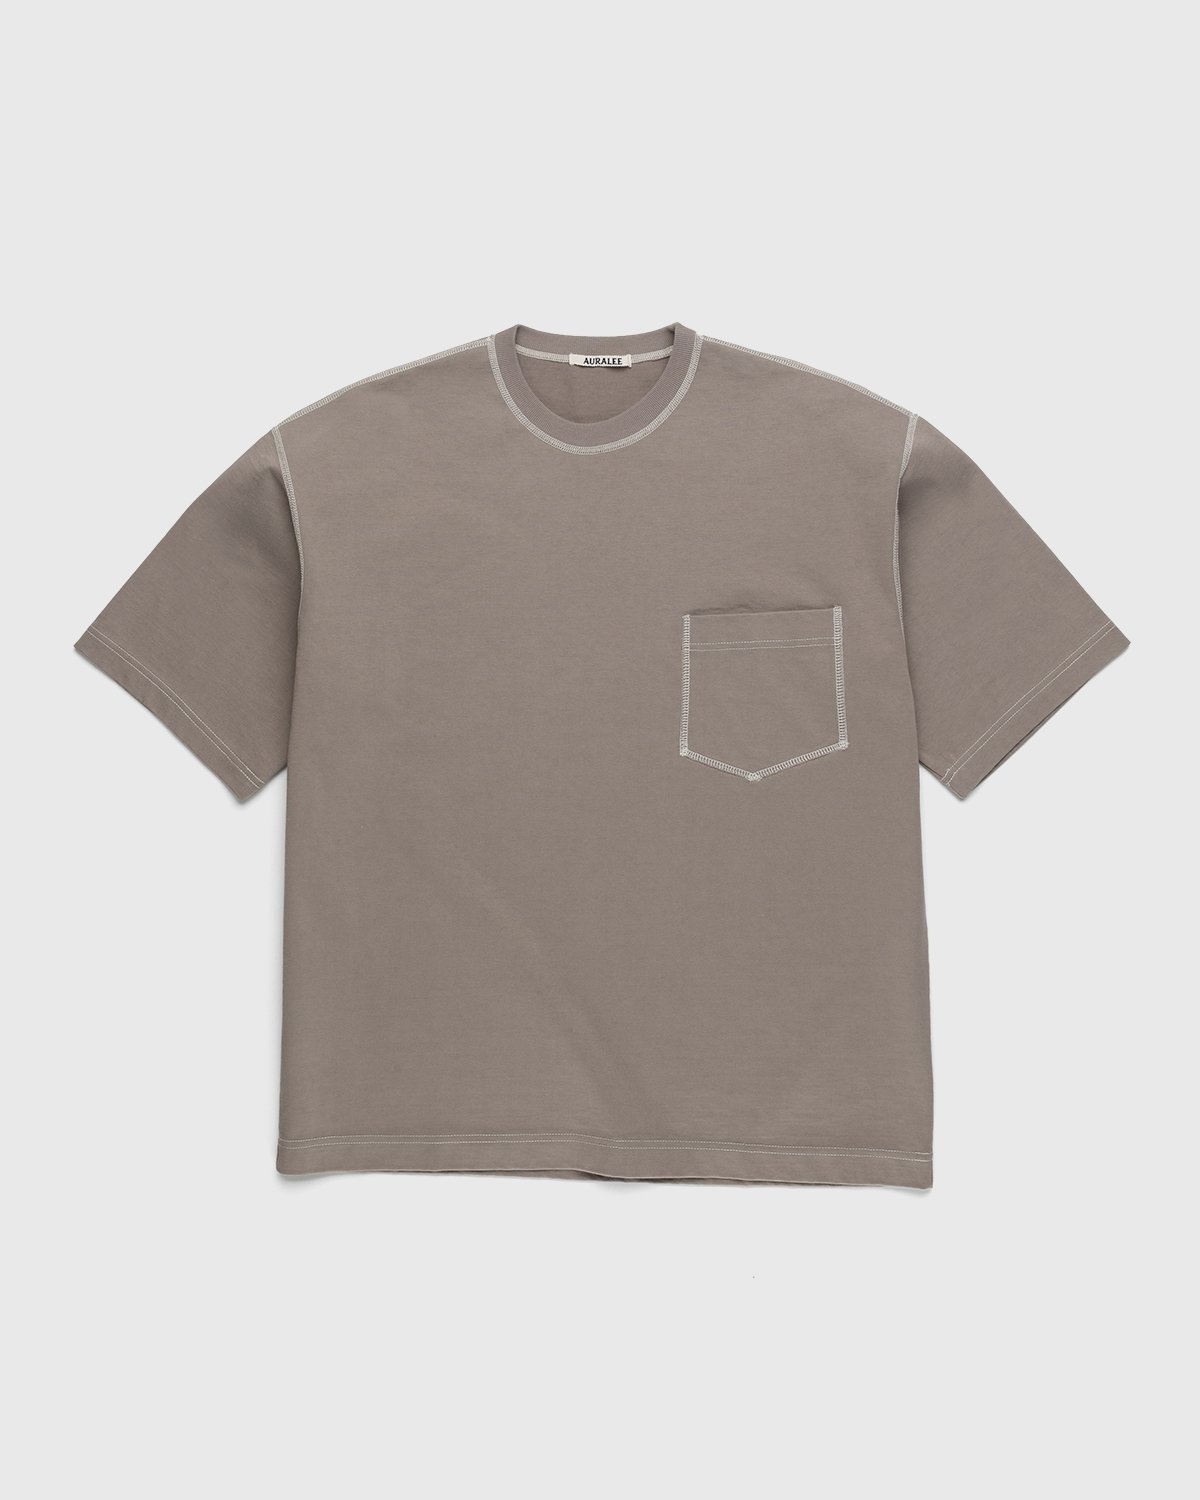 Auralee – Cotton Knit Pocket T-Shirt Grey Beige - T-shirts - Beige - Image 1